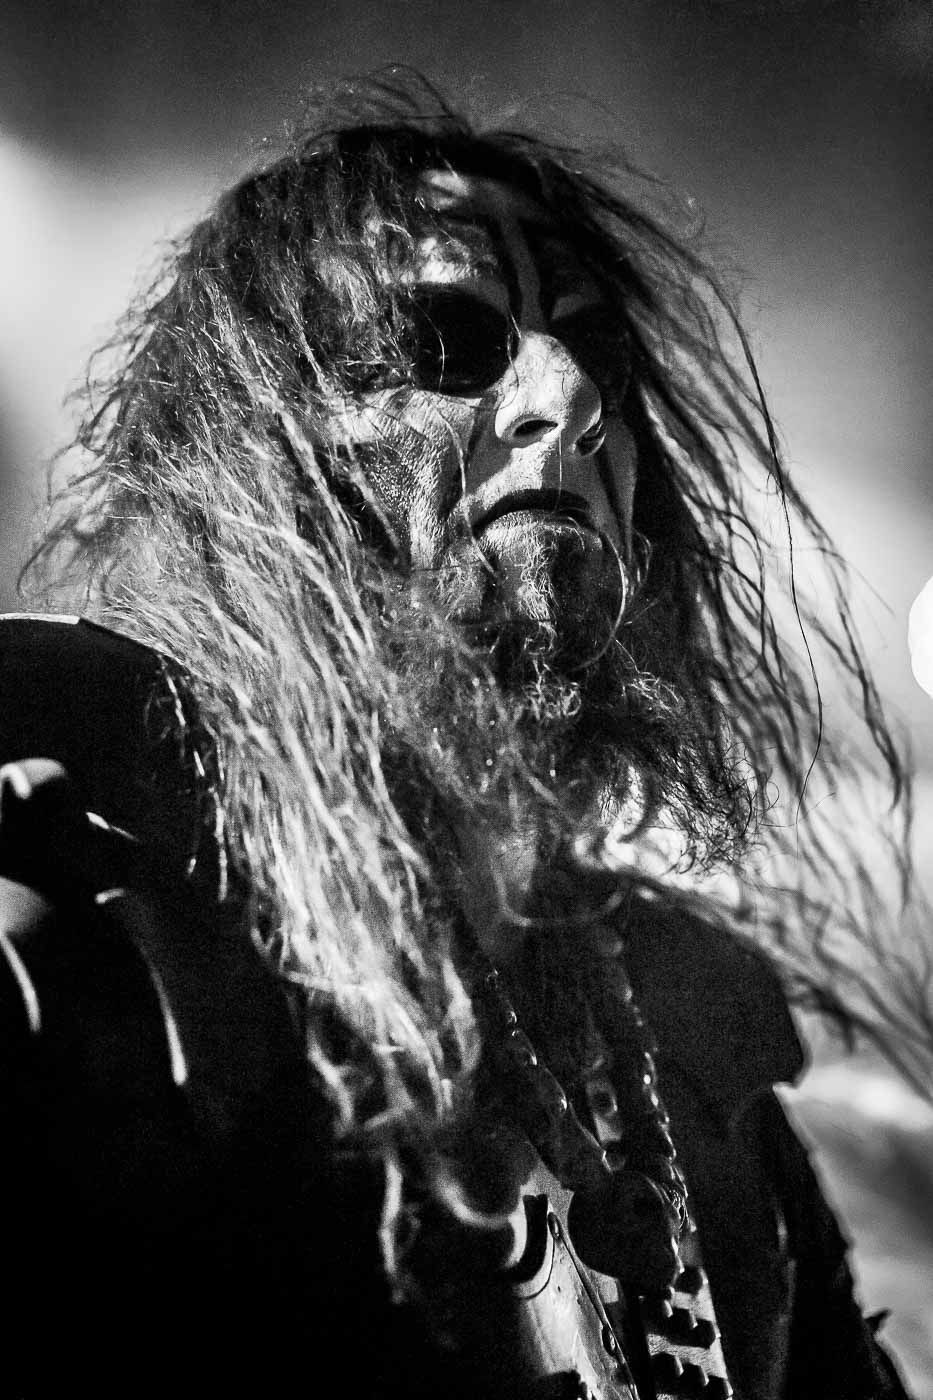 Dark Funeral @ train, Aarhus (DK) – John Paul Molloy x www.vezmagazine.it